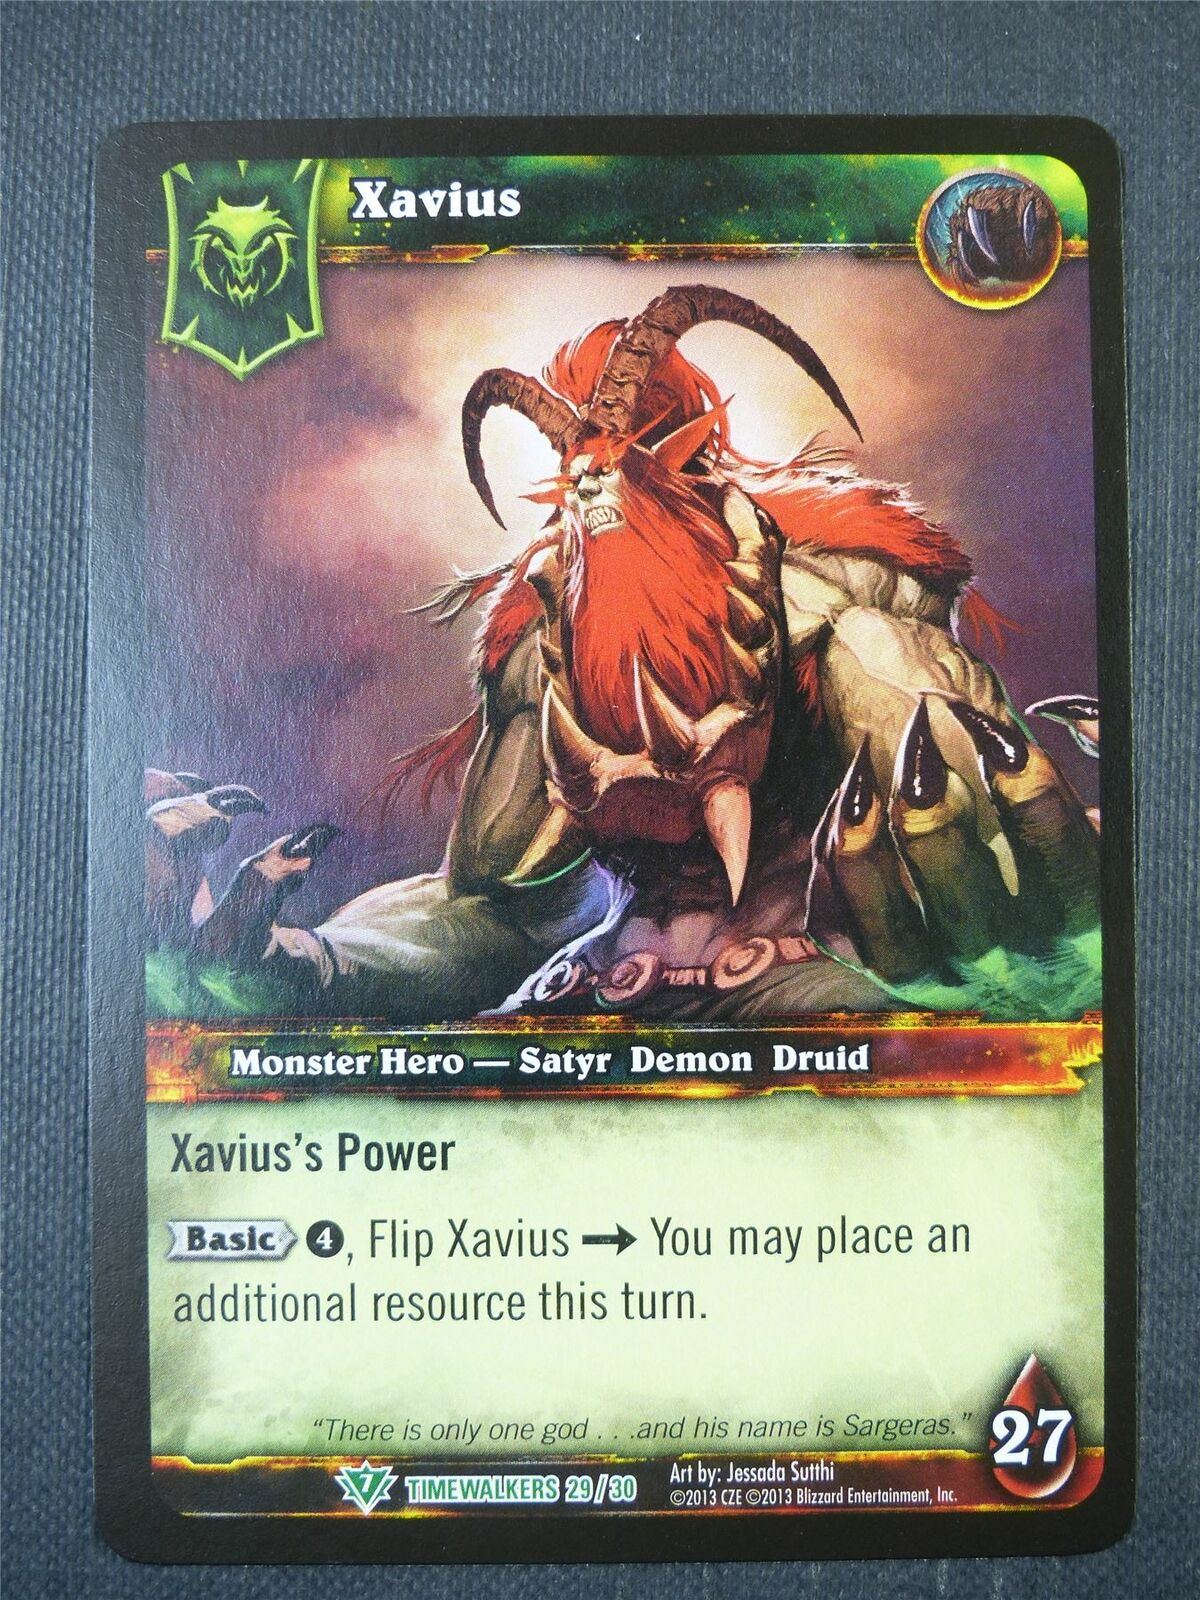 Xavius 29/30 - WoW Card #1AT